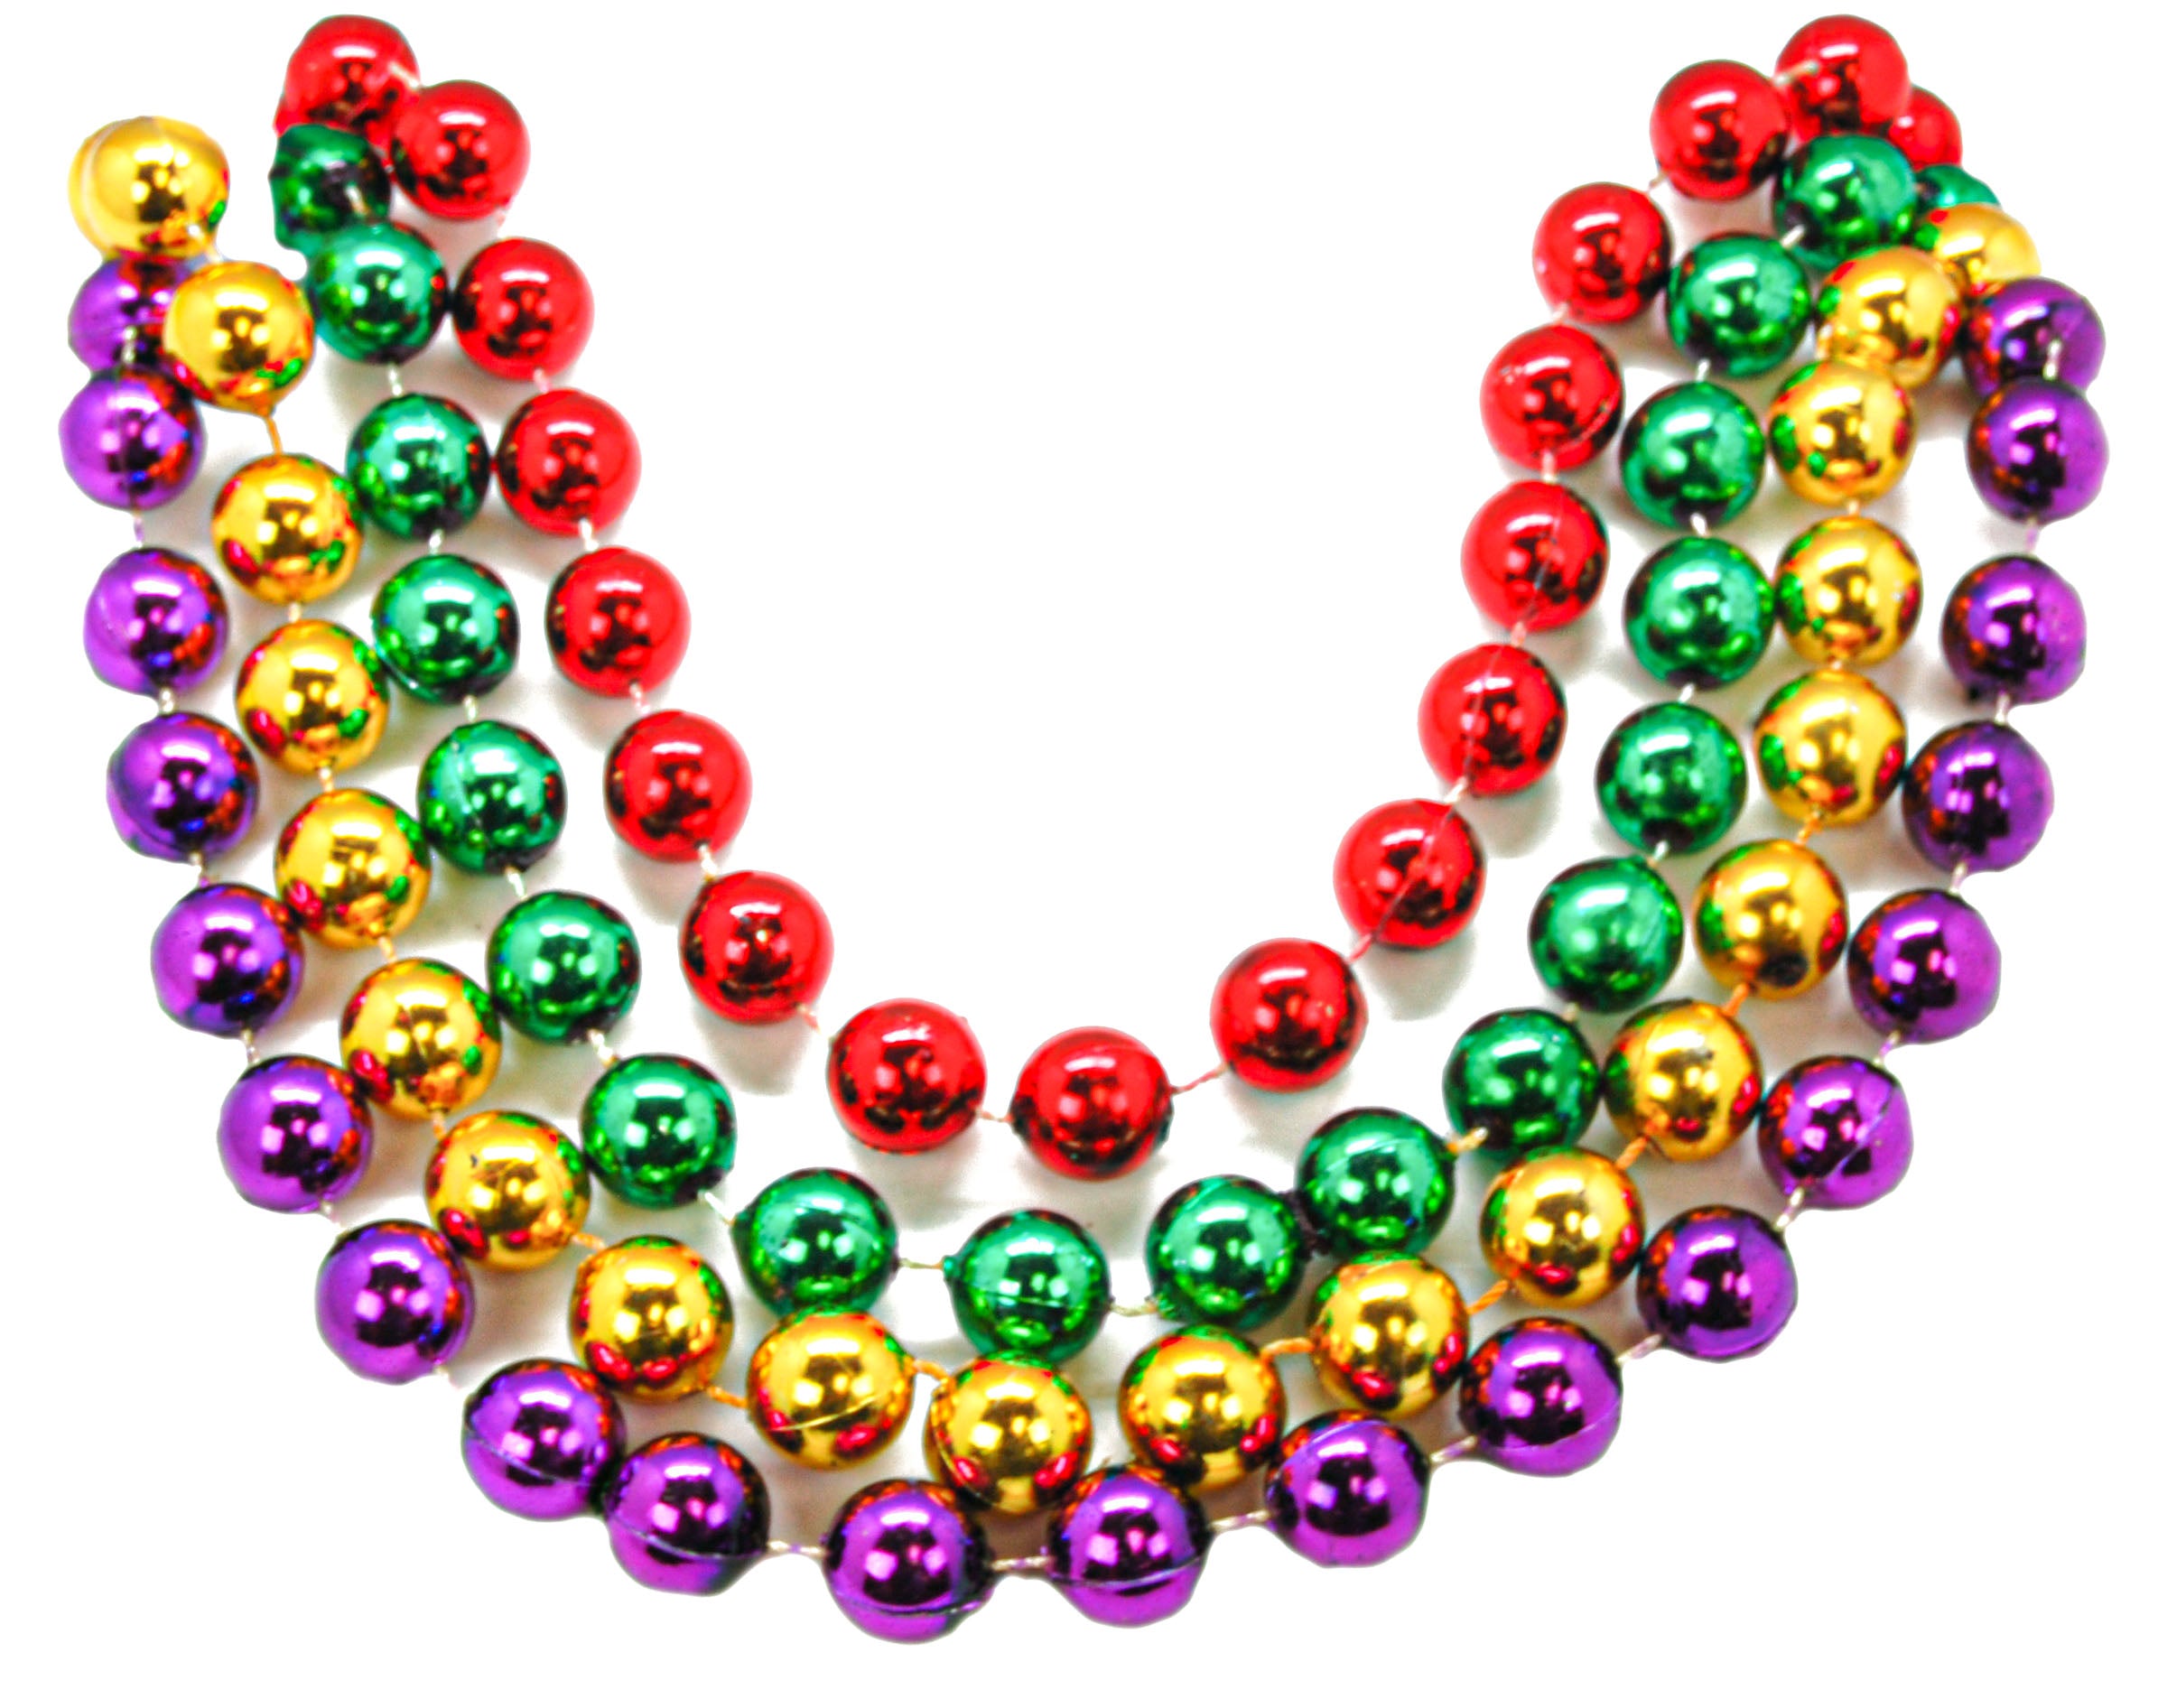 Tri-Color Mardi Gras Beads (4Dz) - Jewelry - 48 Pieces